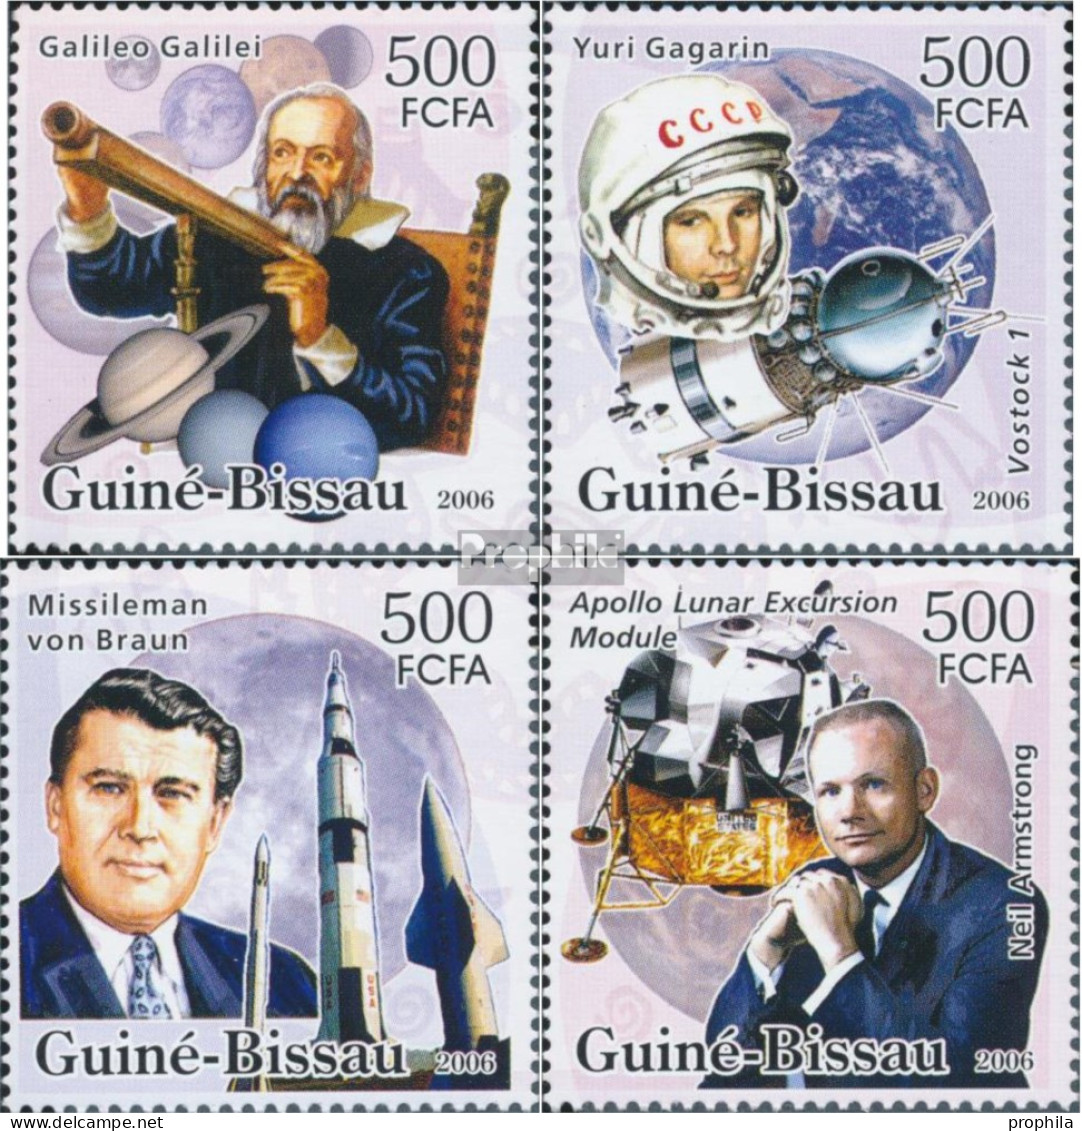 Guinea-Bissau 3326-3329 (kompl. Ausgabe) Postfrisch 2006 Weltraumpioniere - Guinea-Bissau